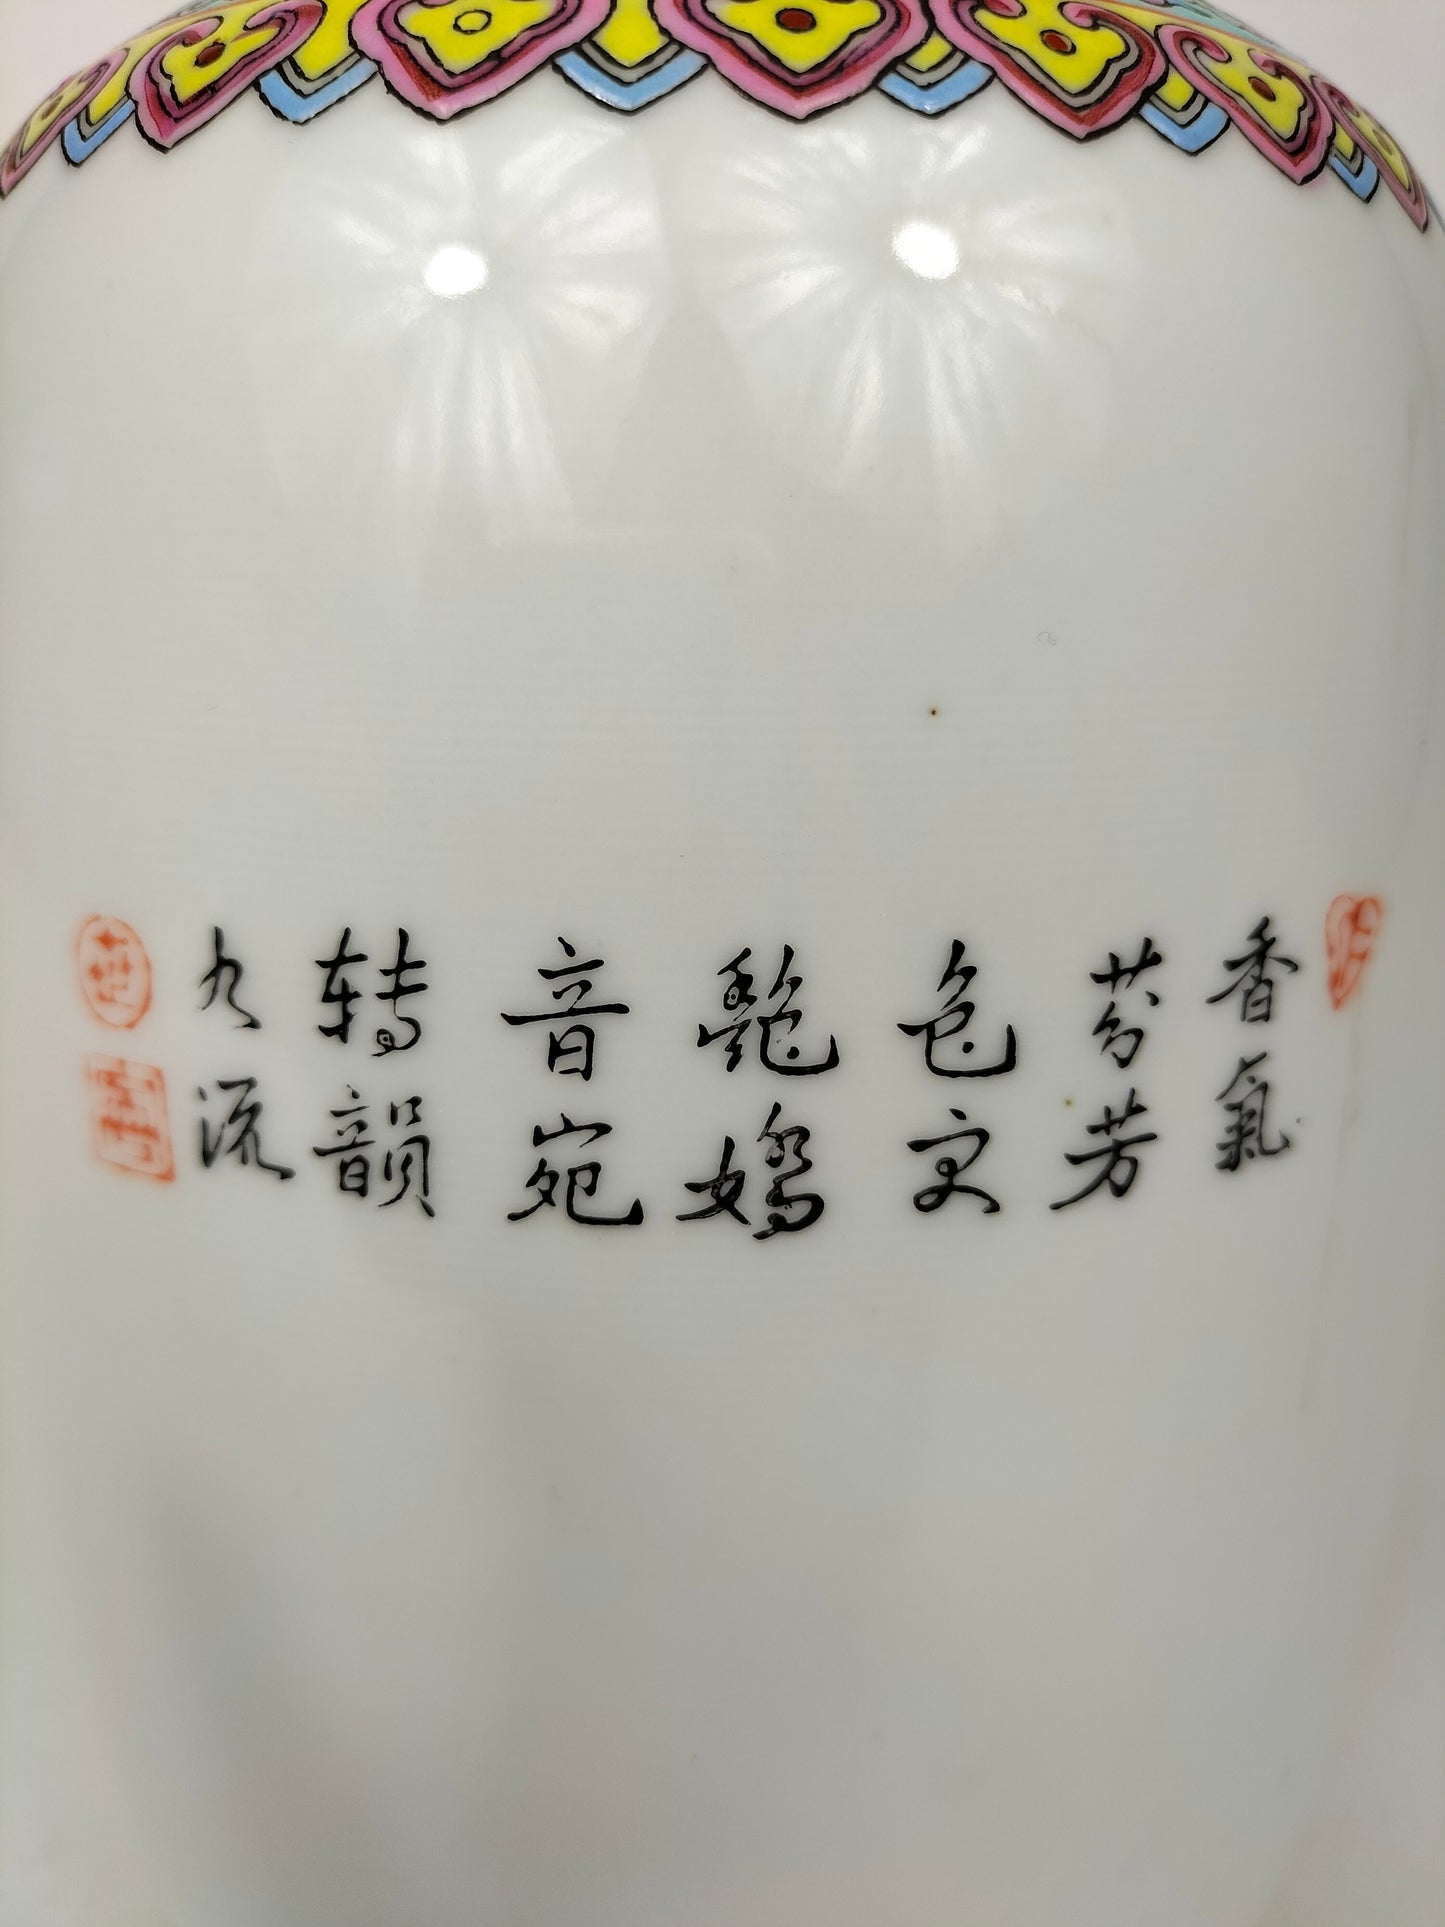 مزهرية وردة عائلية صينية مزينة بالورود والطائر // جينغدتشن - علامة تشيان لونغ - القرن العشرين